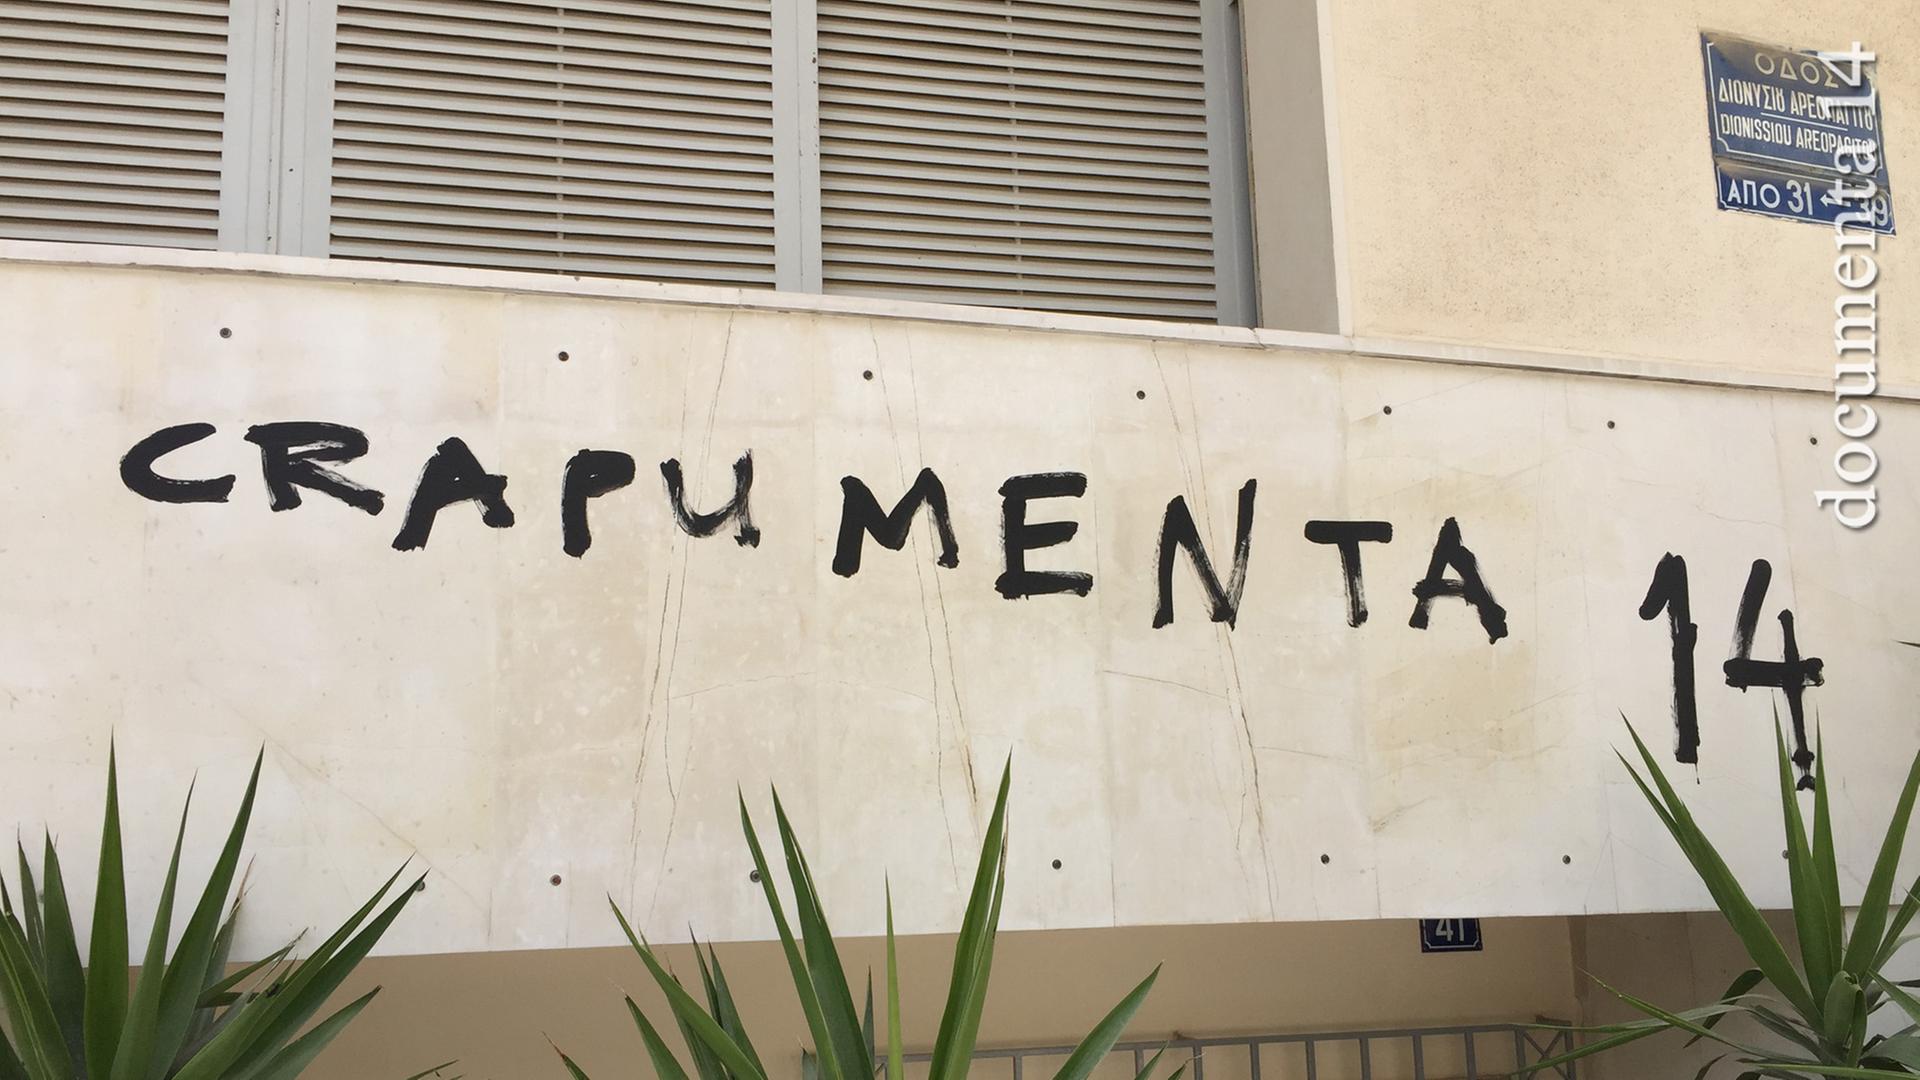 "Crapumenta 14" steht mit schwarzer Farbe auf eine Mauer geschrieben.